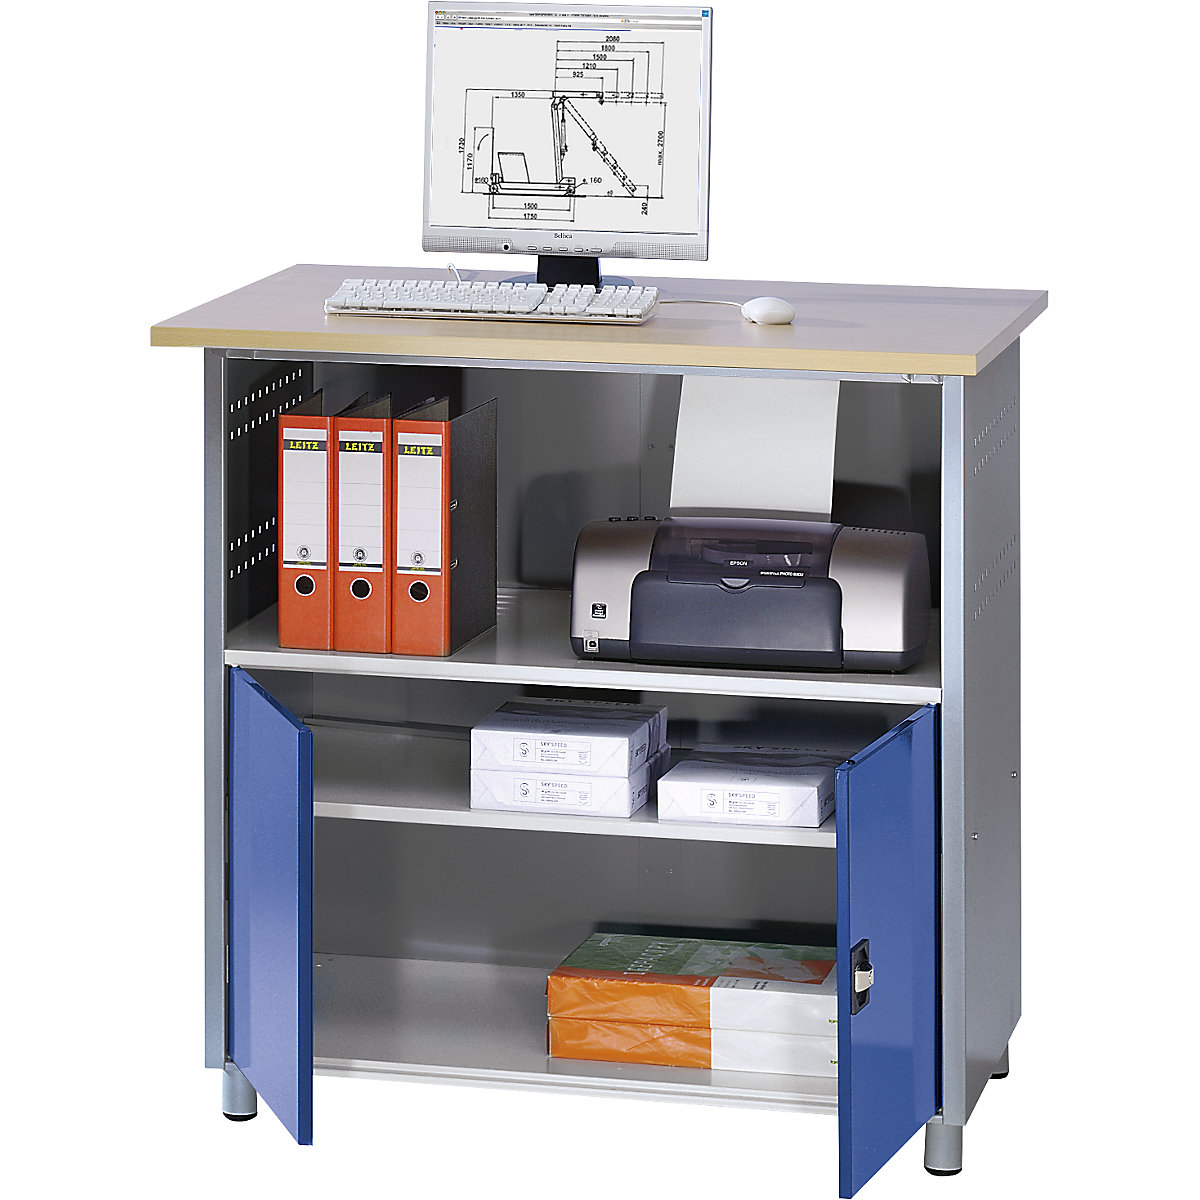 RAU – Stół pod komputer, z półką na całej szerokości, antracytowy metallic / niebieski gencjanowy, RAL 5010